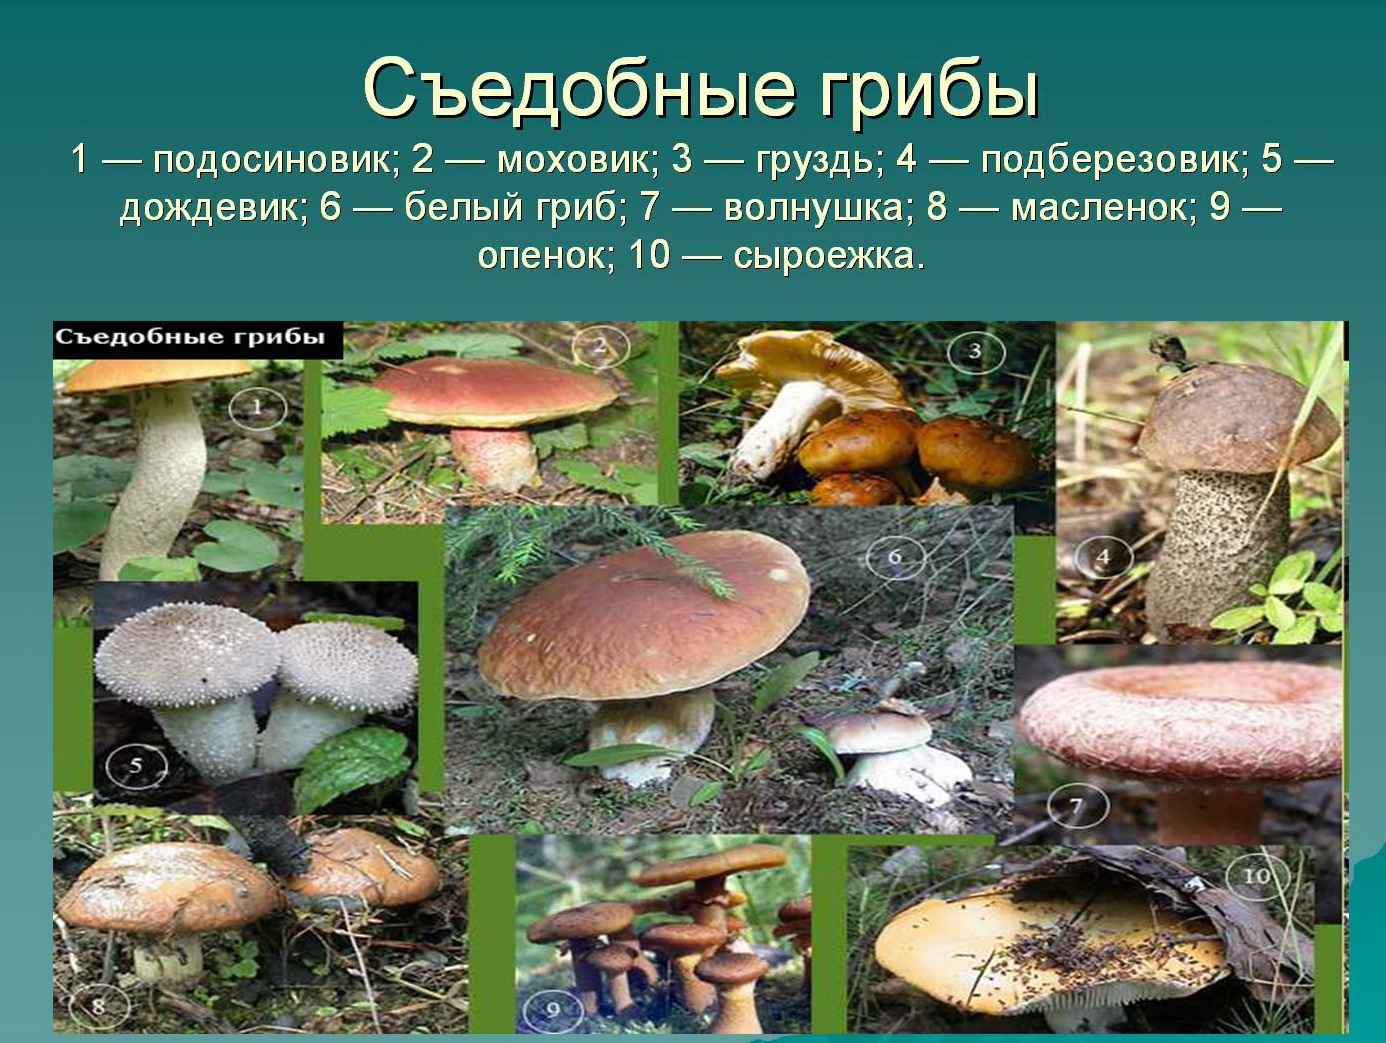 Назовите виды грибов. Съедобные грибы. Название съедобных грибов. Картинки съедобных грибов с названиями. Описание съедобных грибов.